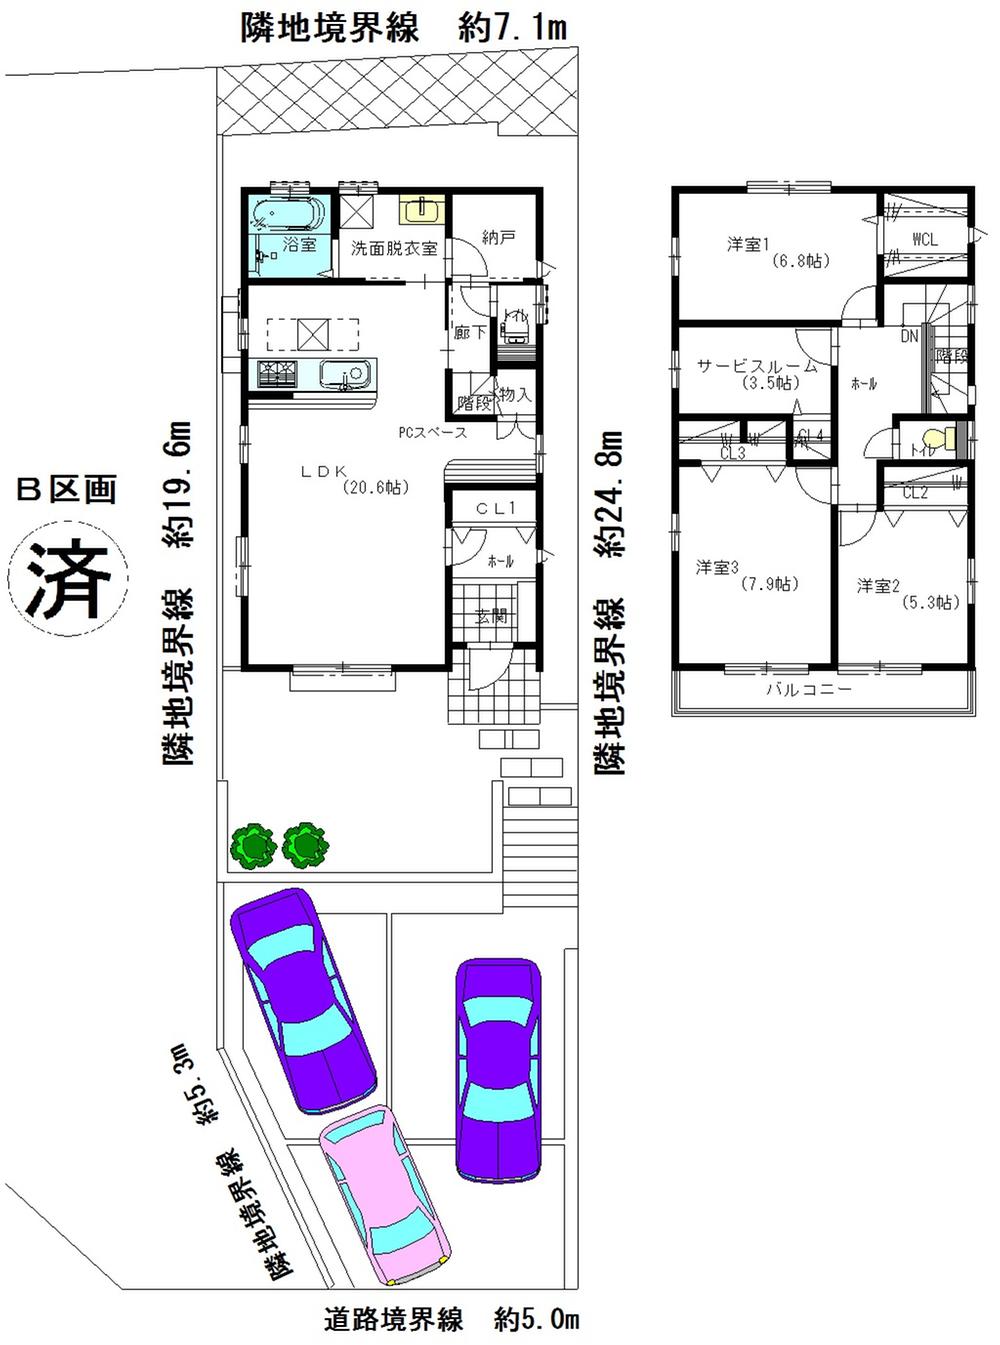 Floor plan. 34,800,000 yen, 3LDK + S (storeroom), Land area 171.75 sq m , It is a building area of ​​112.21 sq m floor plan